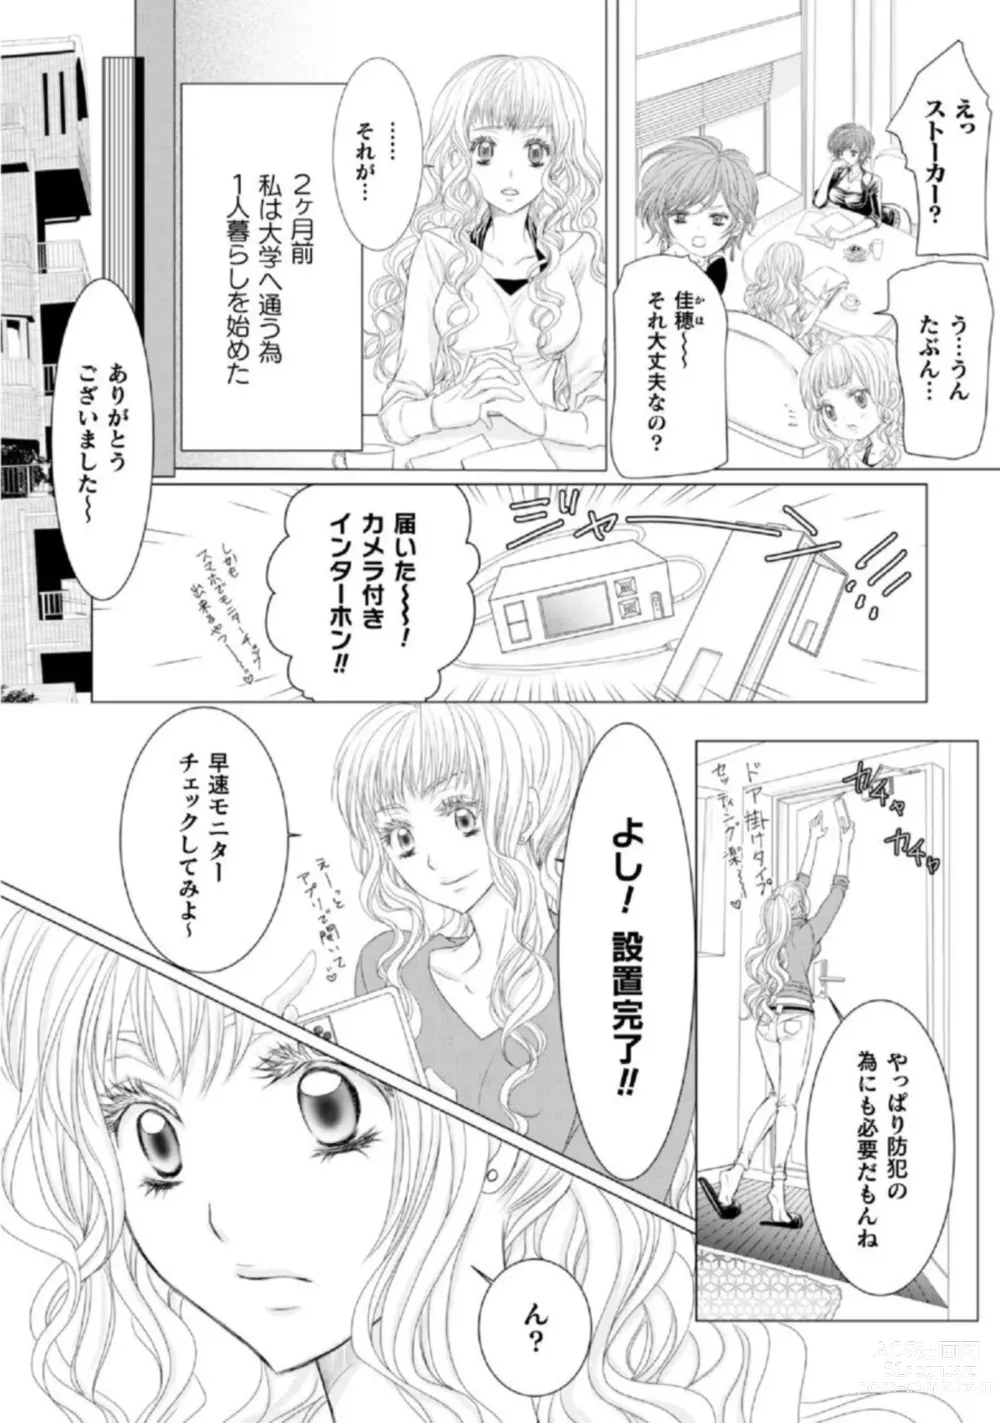 Page 4 of manga Shokorashukureansorojī Ibitsuai ～ Yandere Kareshi no Omoi ai ni Kakowarete ～ 1